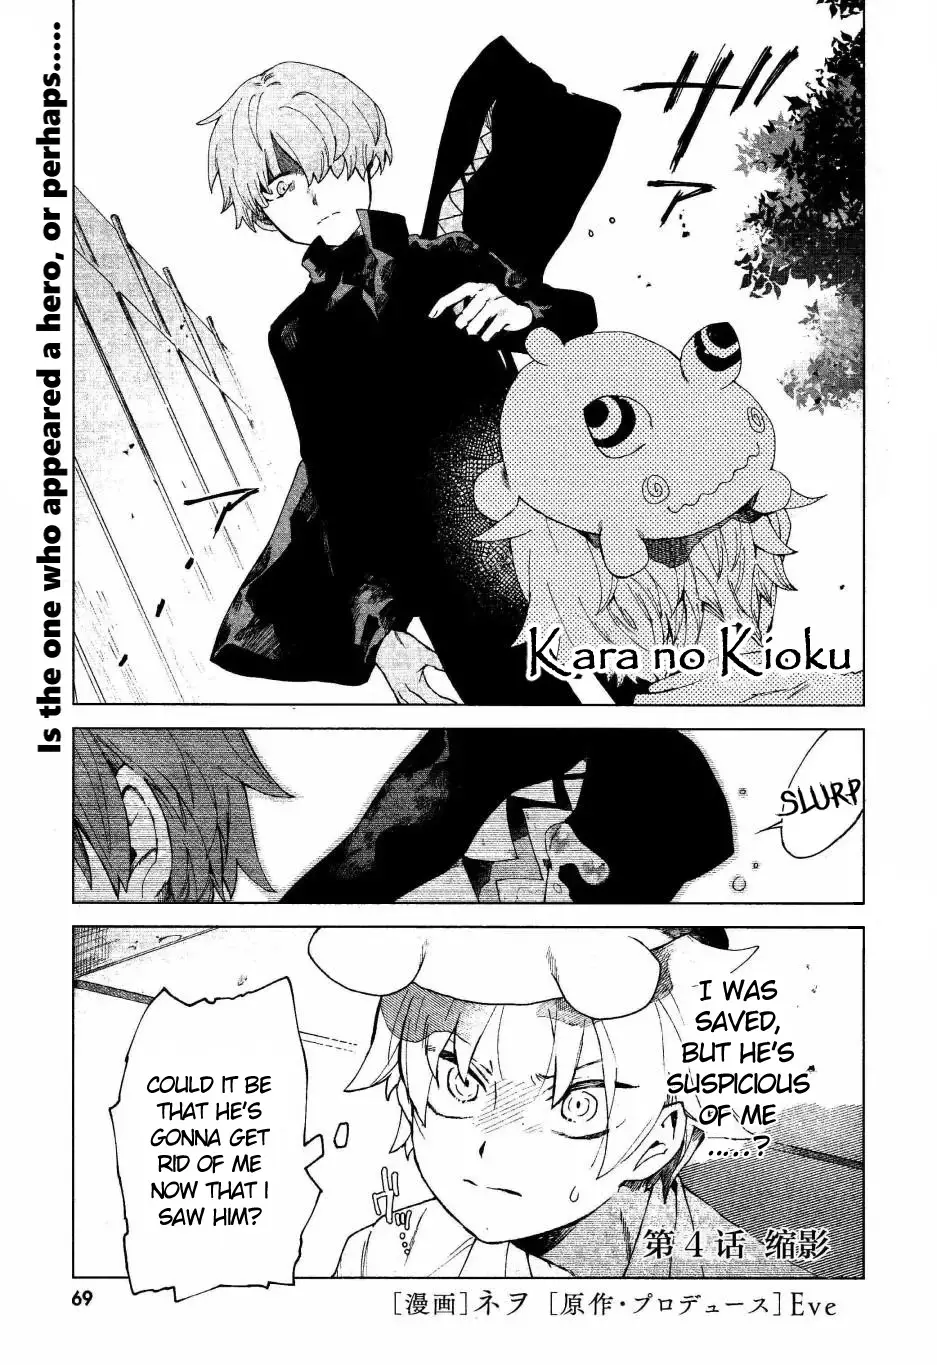 Kara No Kioku - 4 page 1